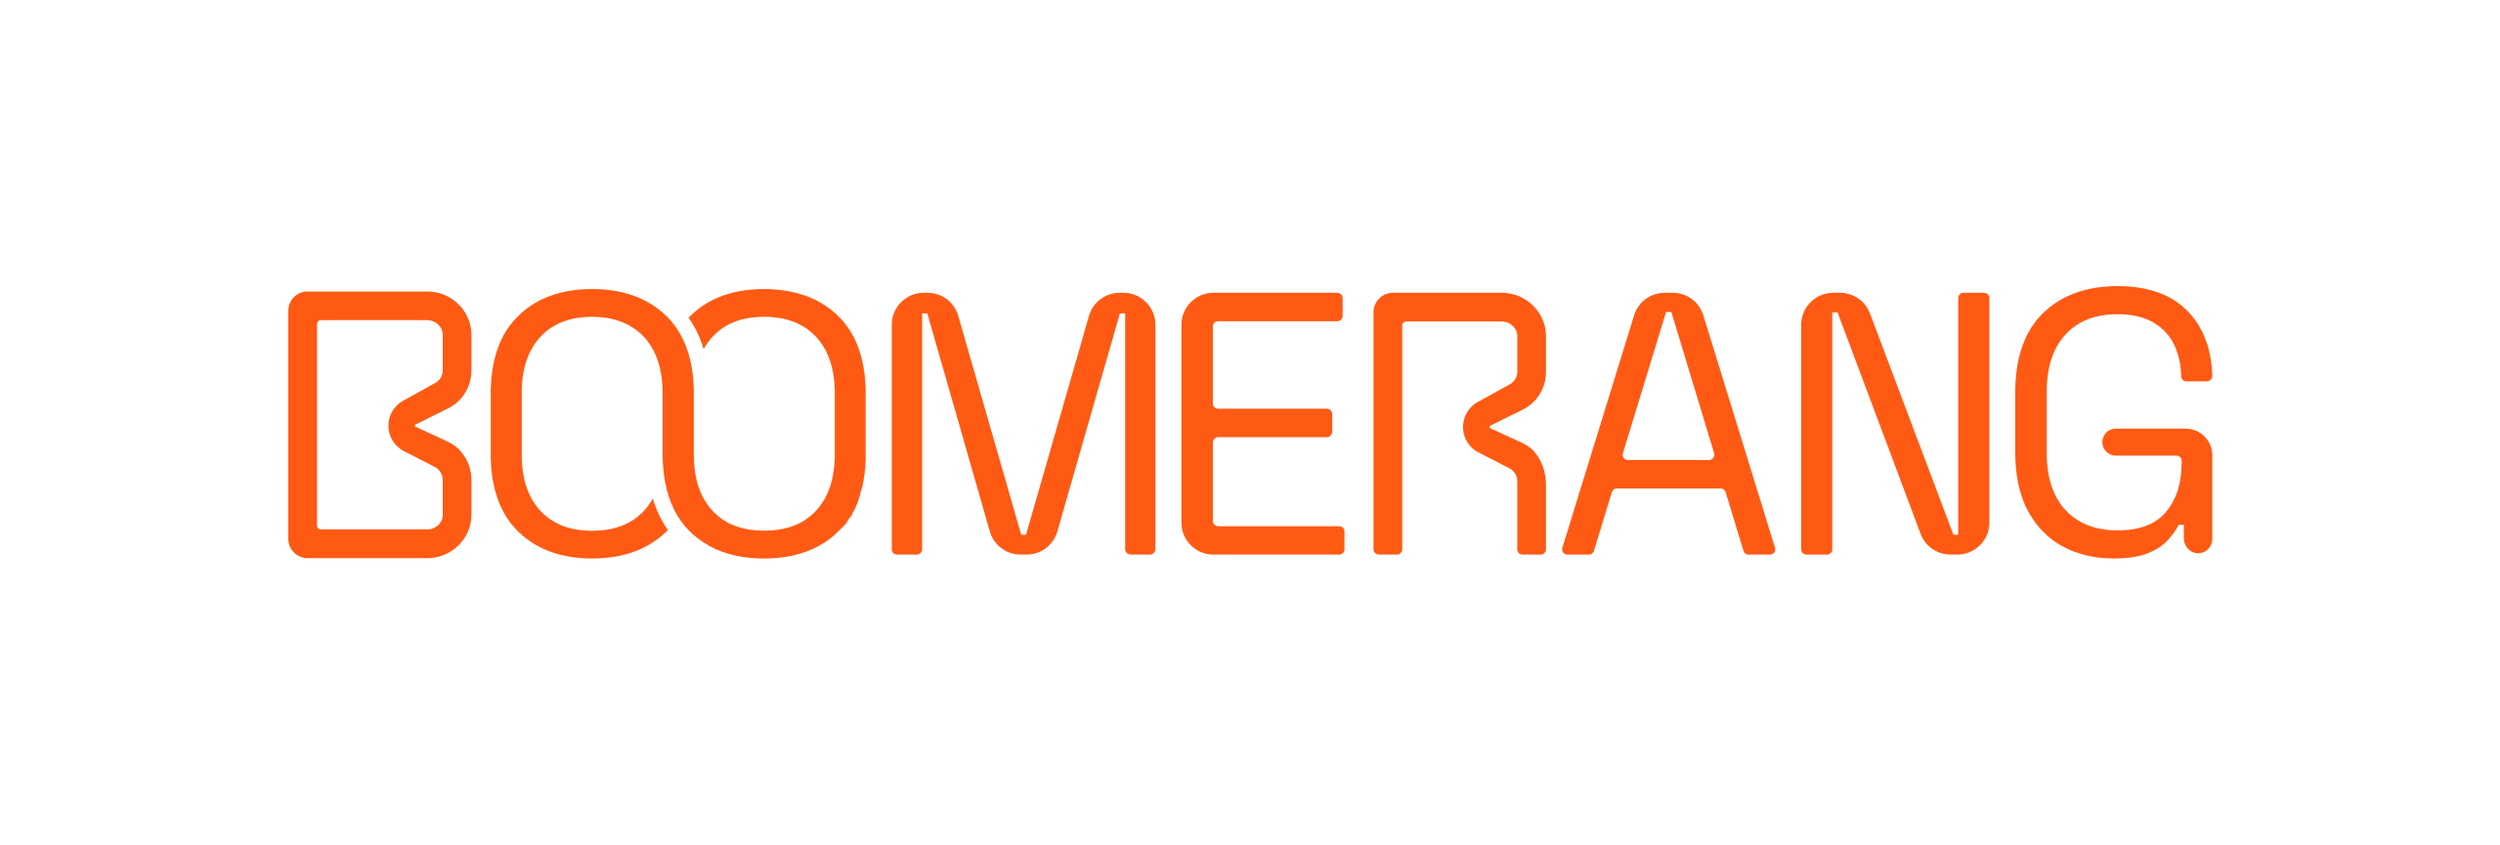 boomerang-logo-orange.png